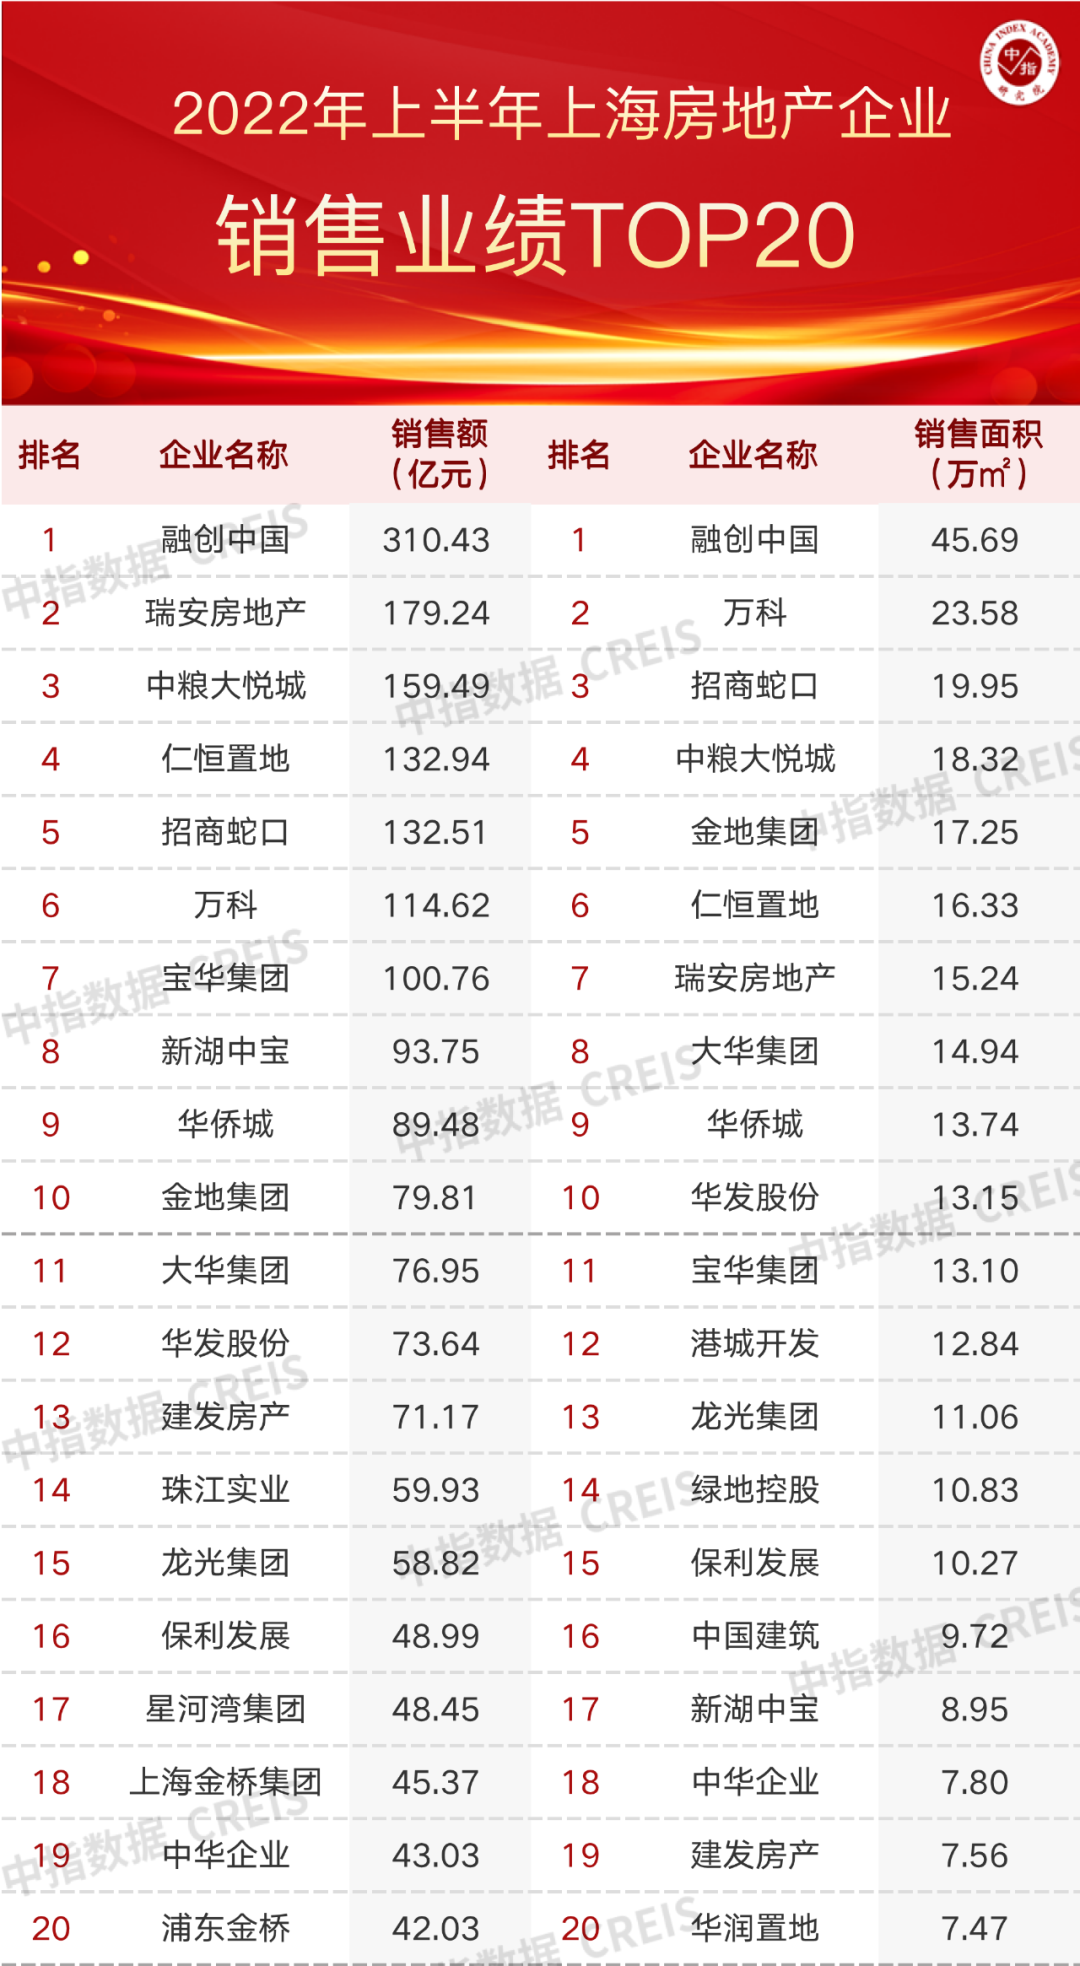 2022年上半年上海房地产企业销售业绩TOP20|上海市